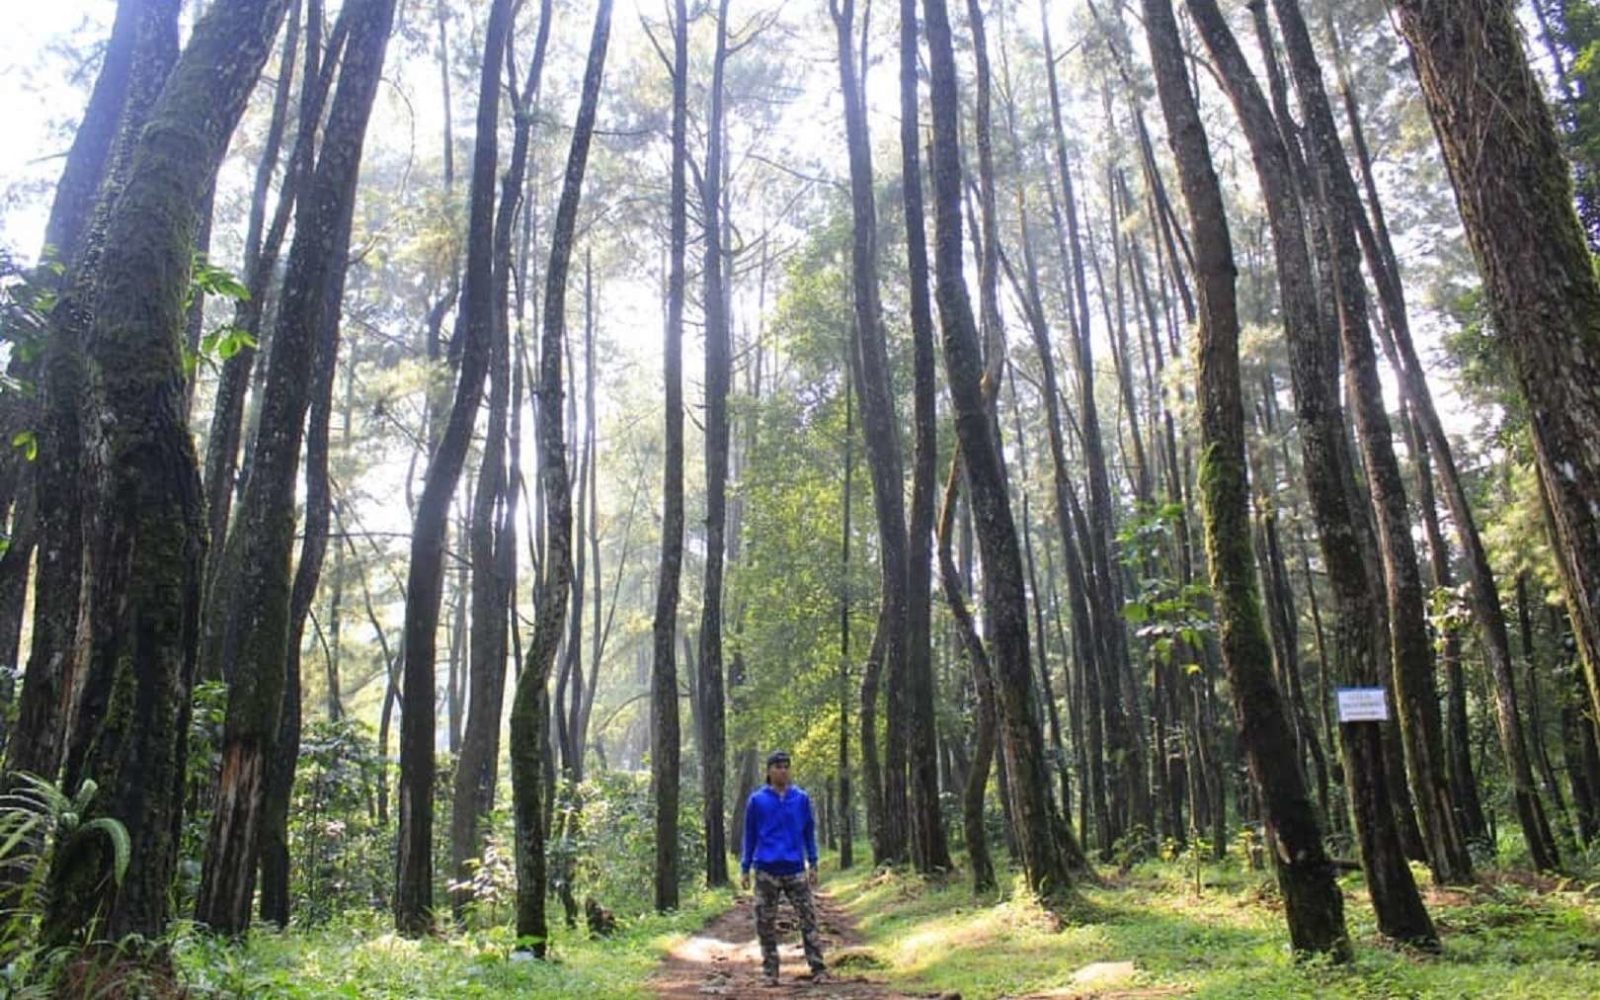 Menikmati keteduhan hutan pinus yang menjadi vegetasi kawasan Curug Cilember Bogor